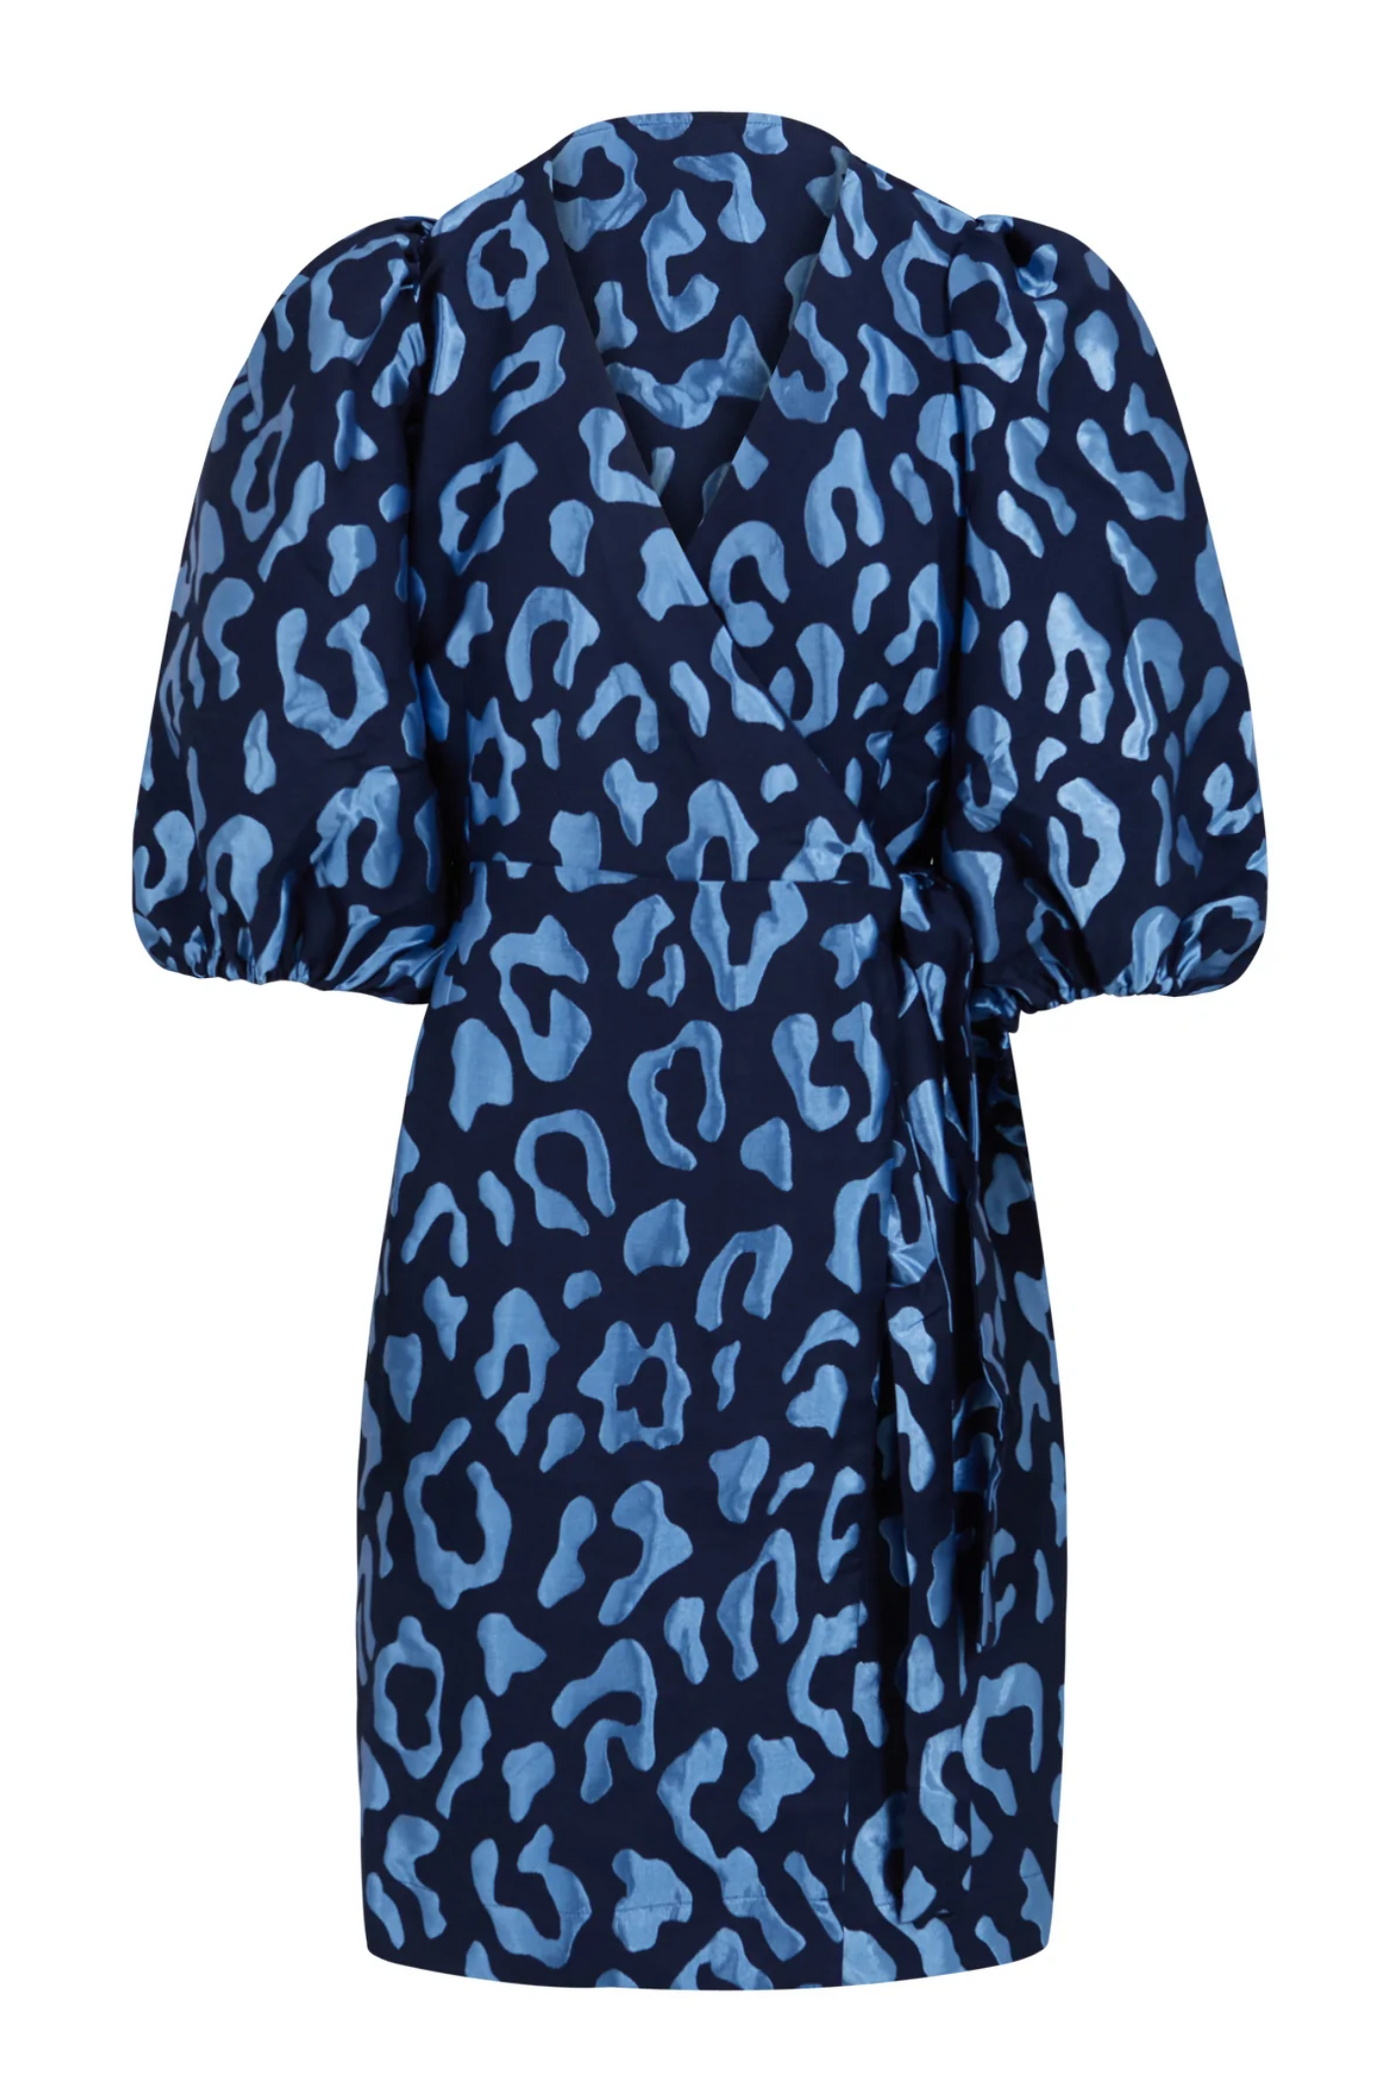 Coster Copenhagen Blue Leopard Print Dress | Jezabel Boutique